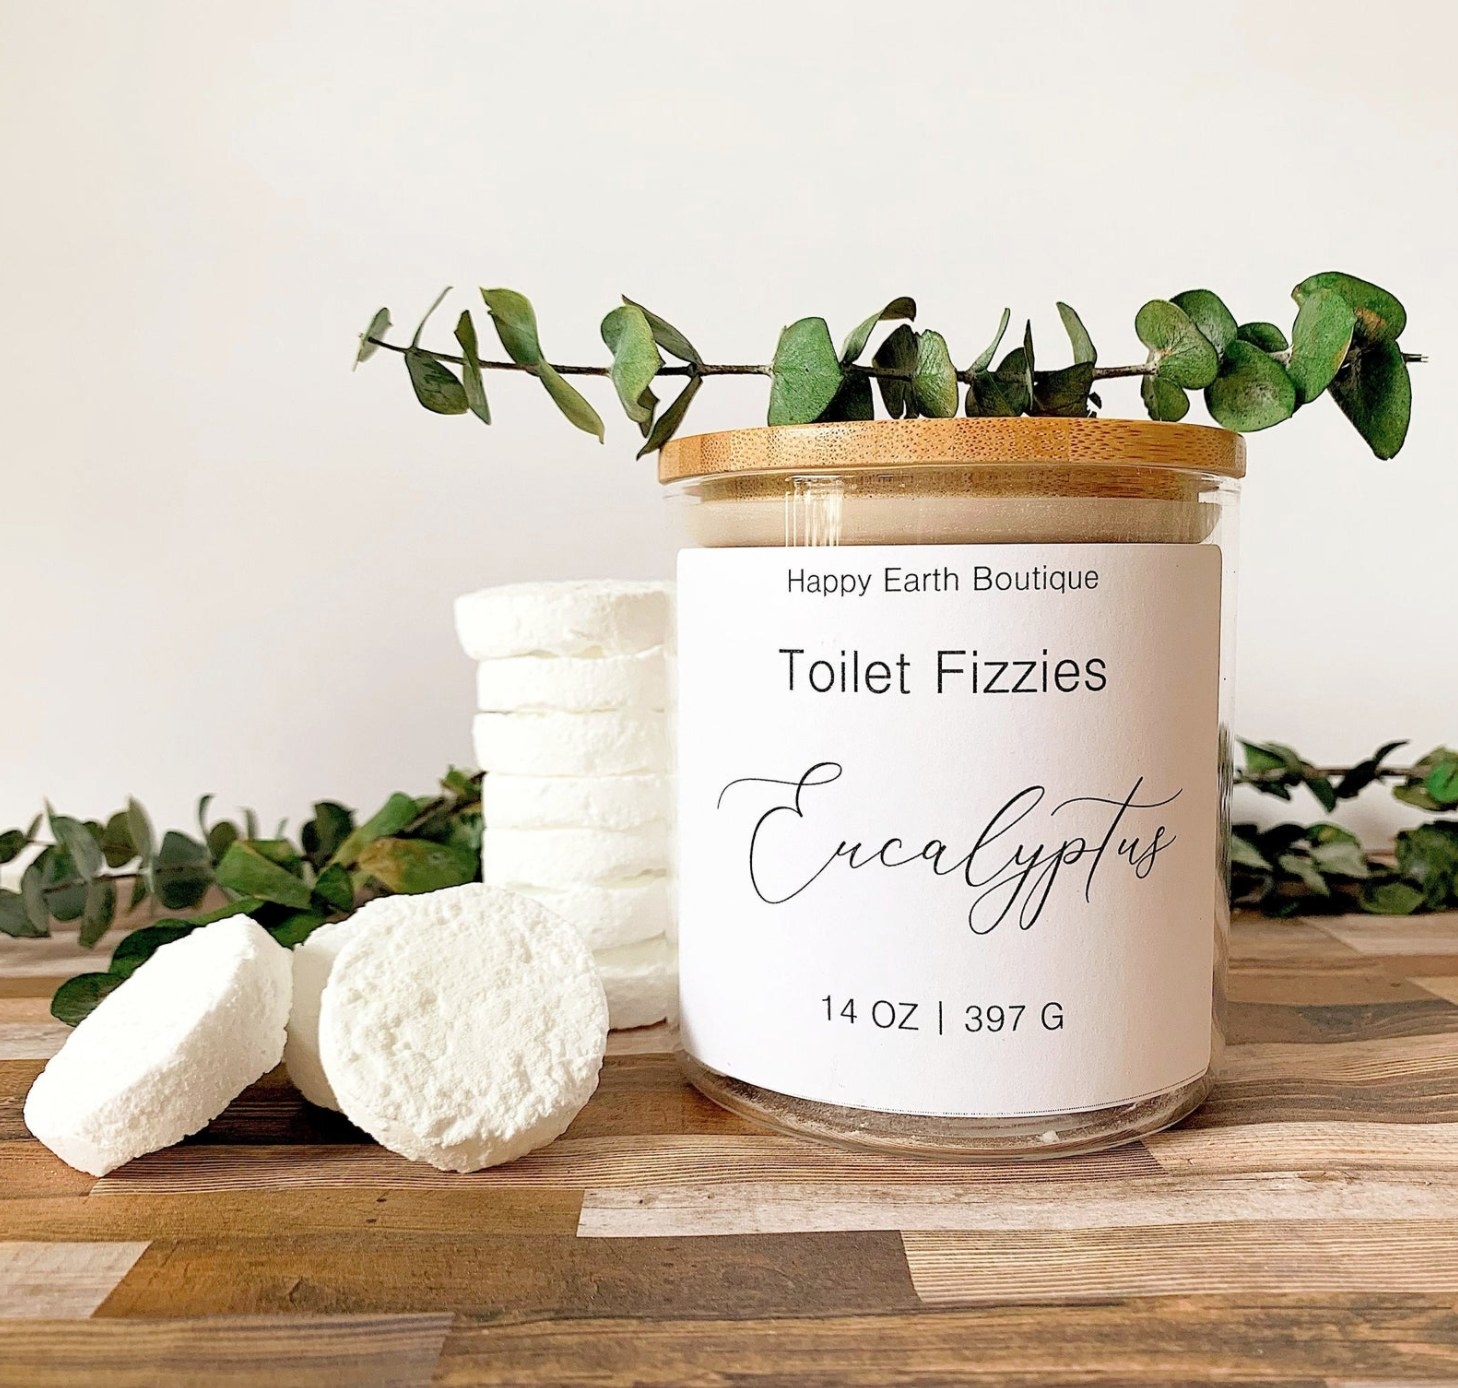 the jar of eucalyptus toilet fizzies